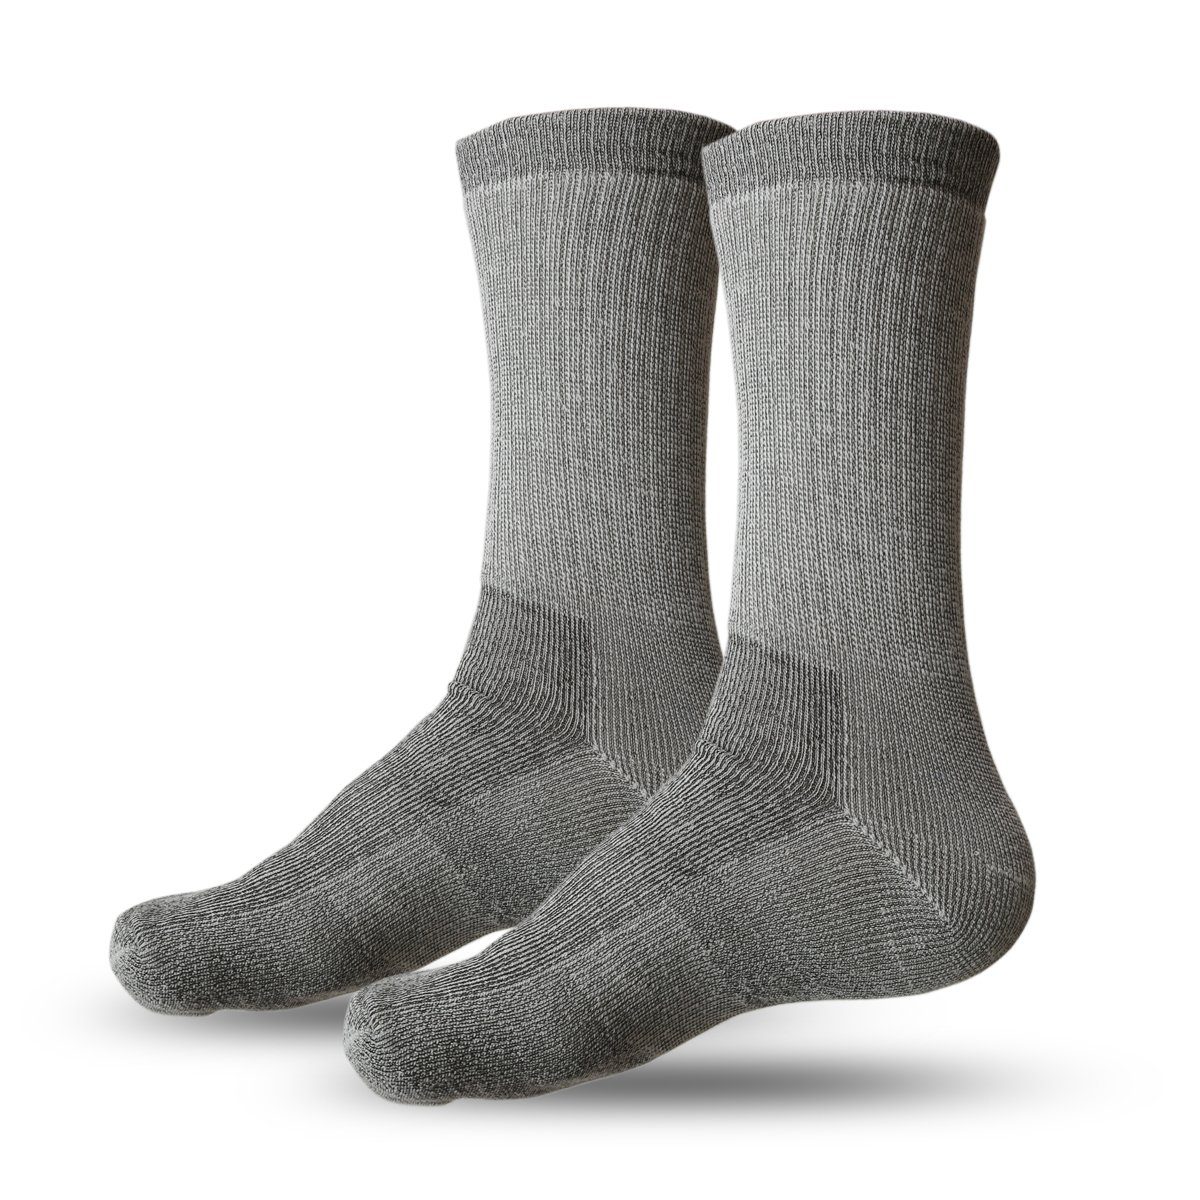 Sonia Originelli Norwegersocken 1 Paar Ski Socken Wolle Winter Unisex Strümpfe grau | Socken